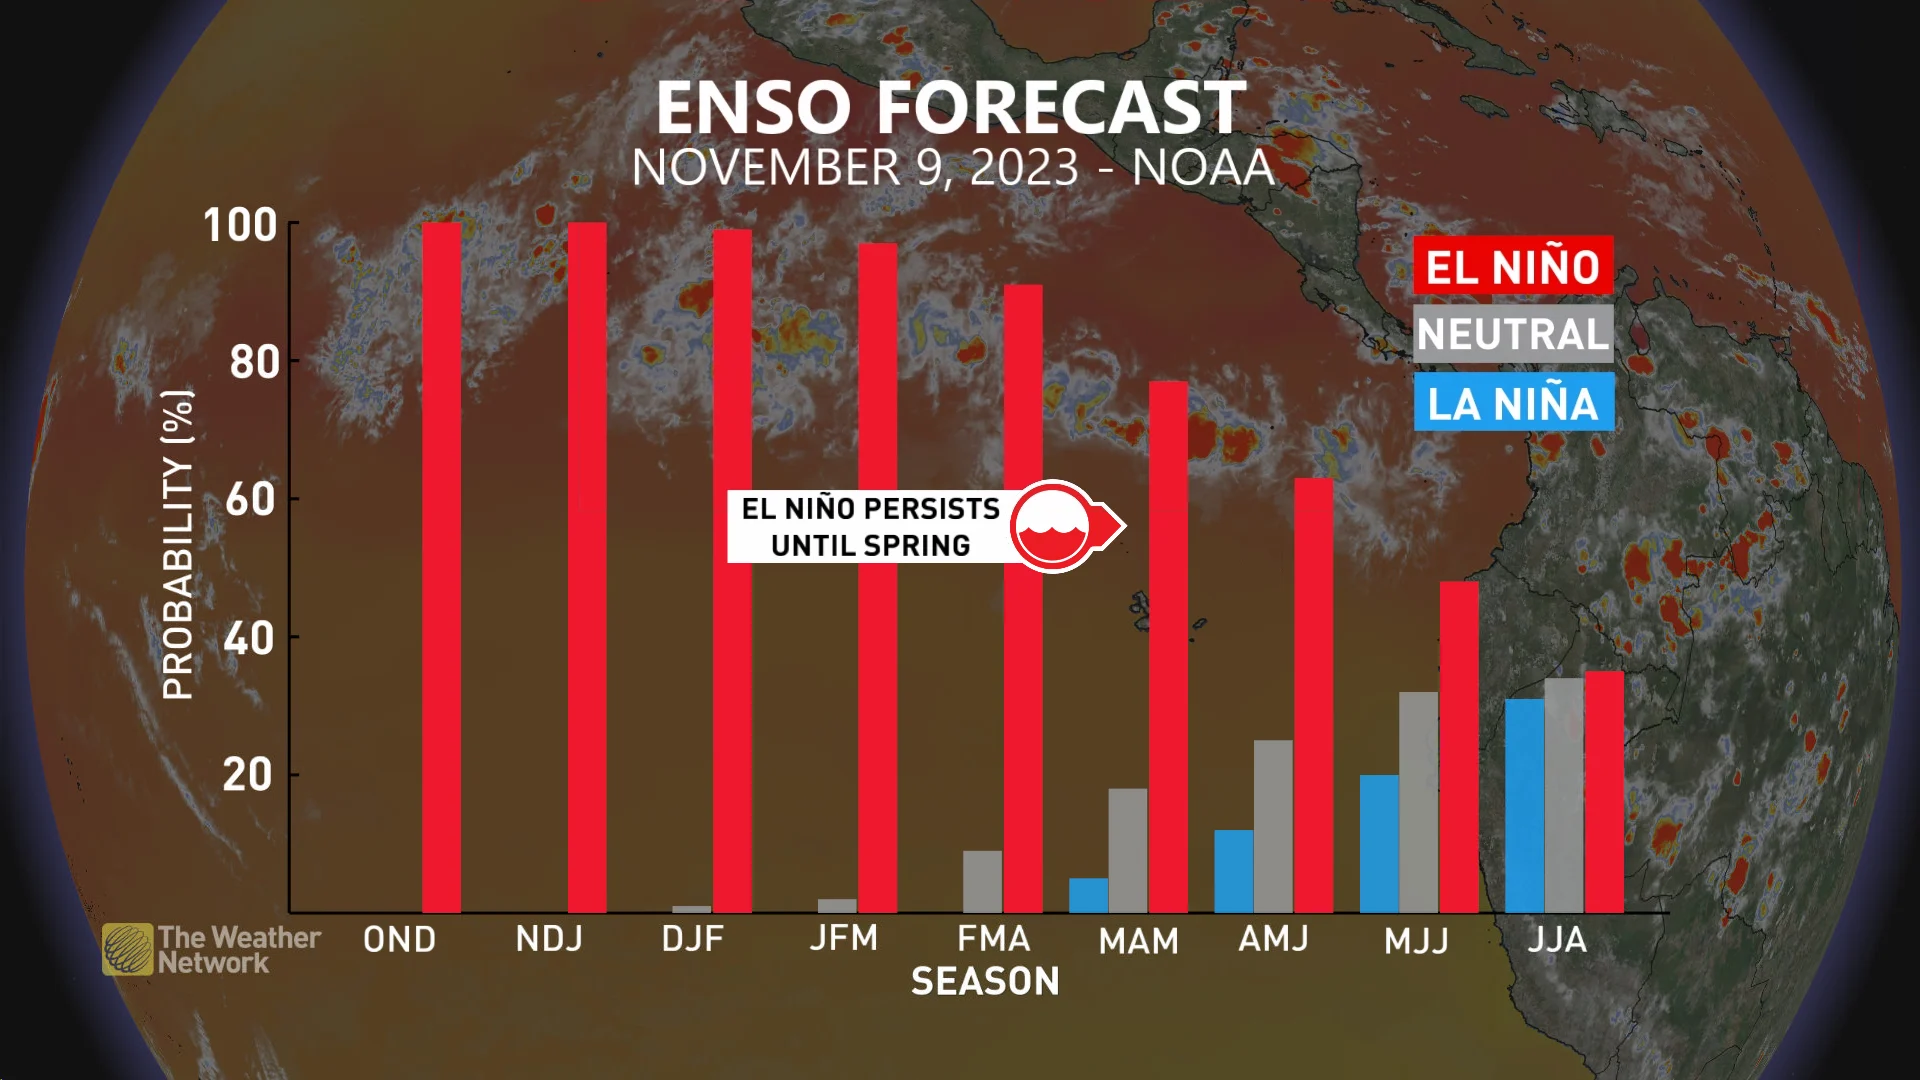 NOAA El Niño Forecast November 2023